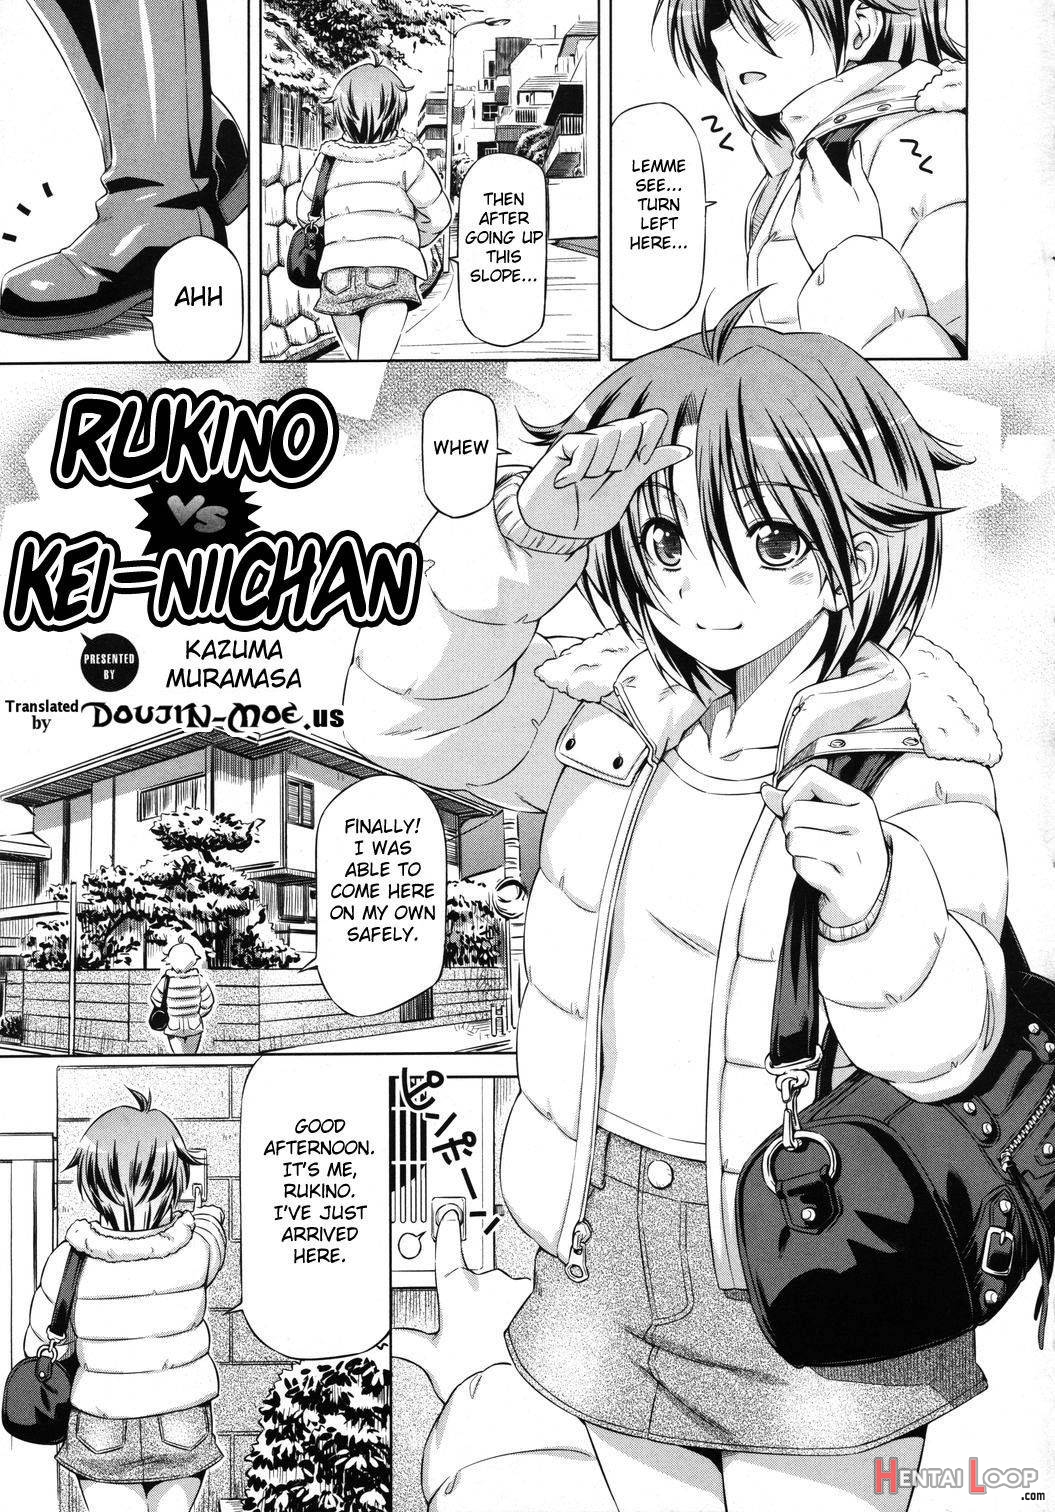 Rukino Versus Kei-niichan page 1